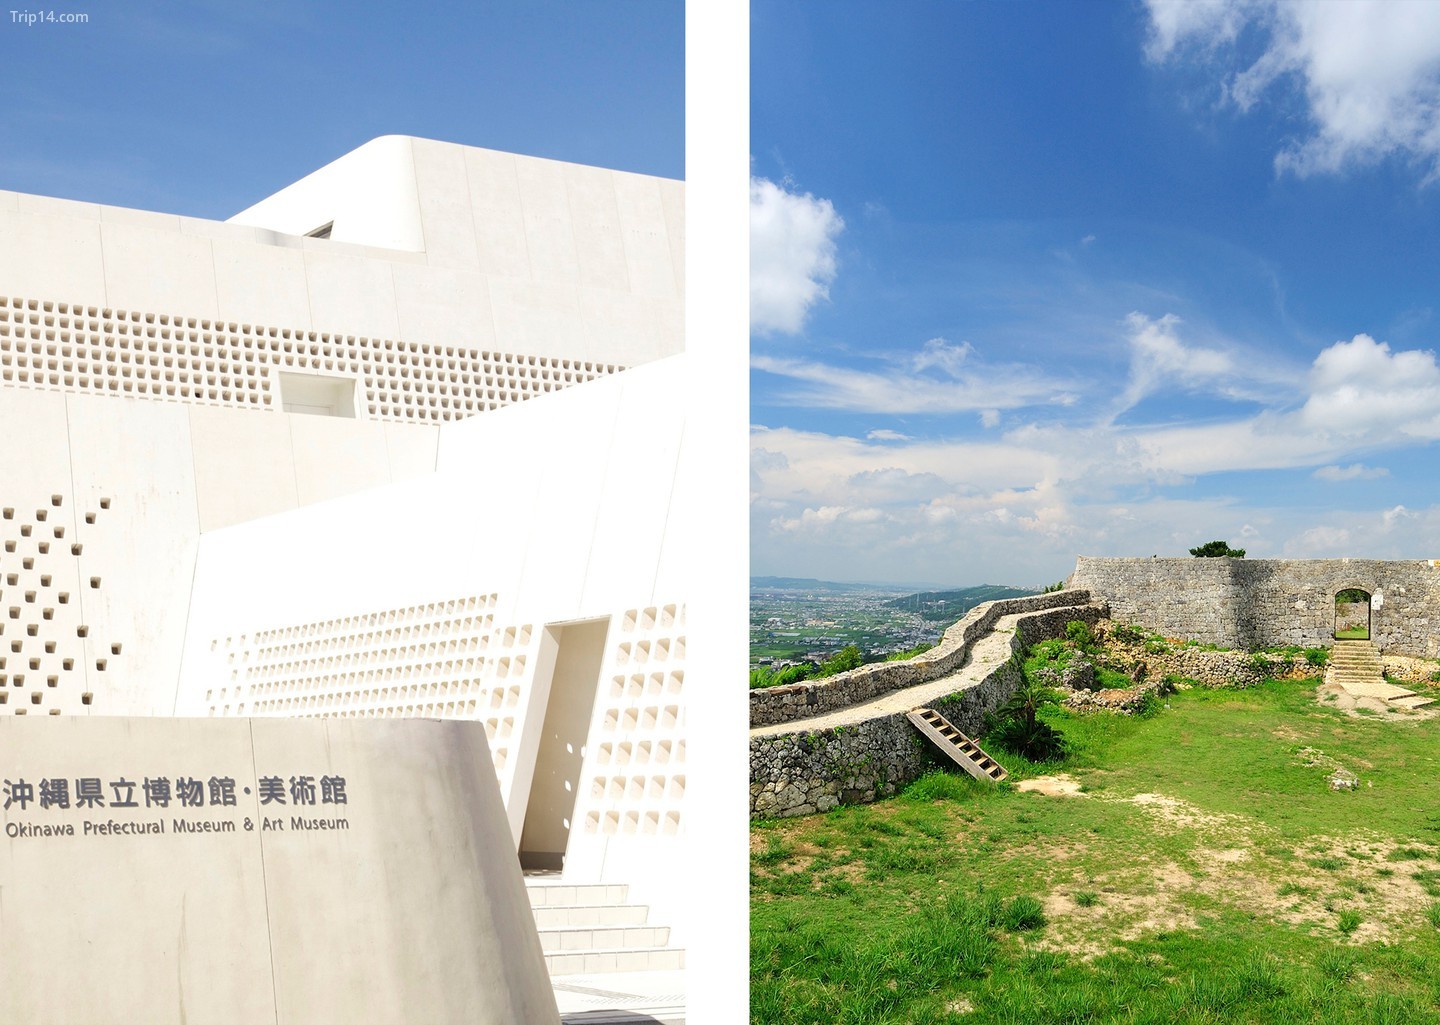  Thiết kế của Bảo tàng Nghệ thuật và Bảo tàng Tỉnh Okinawa ở Naha (trái) được thông báo bởi kiến ​​trúc gusuku của các pháo đài như Lâu đài Nakagusuku (phải)   |   Còn lại: 